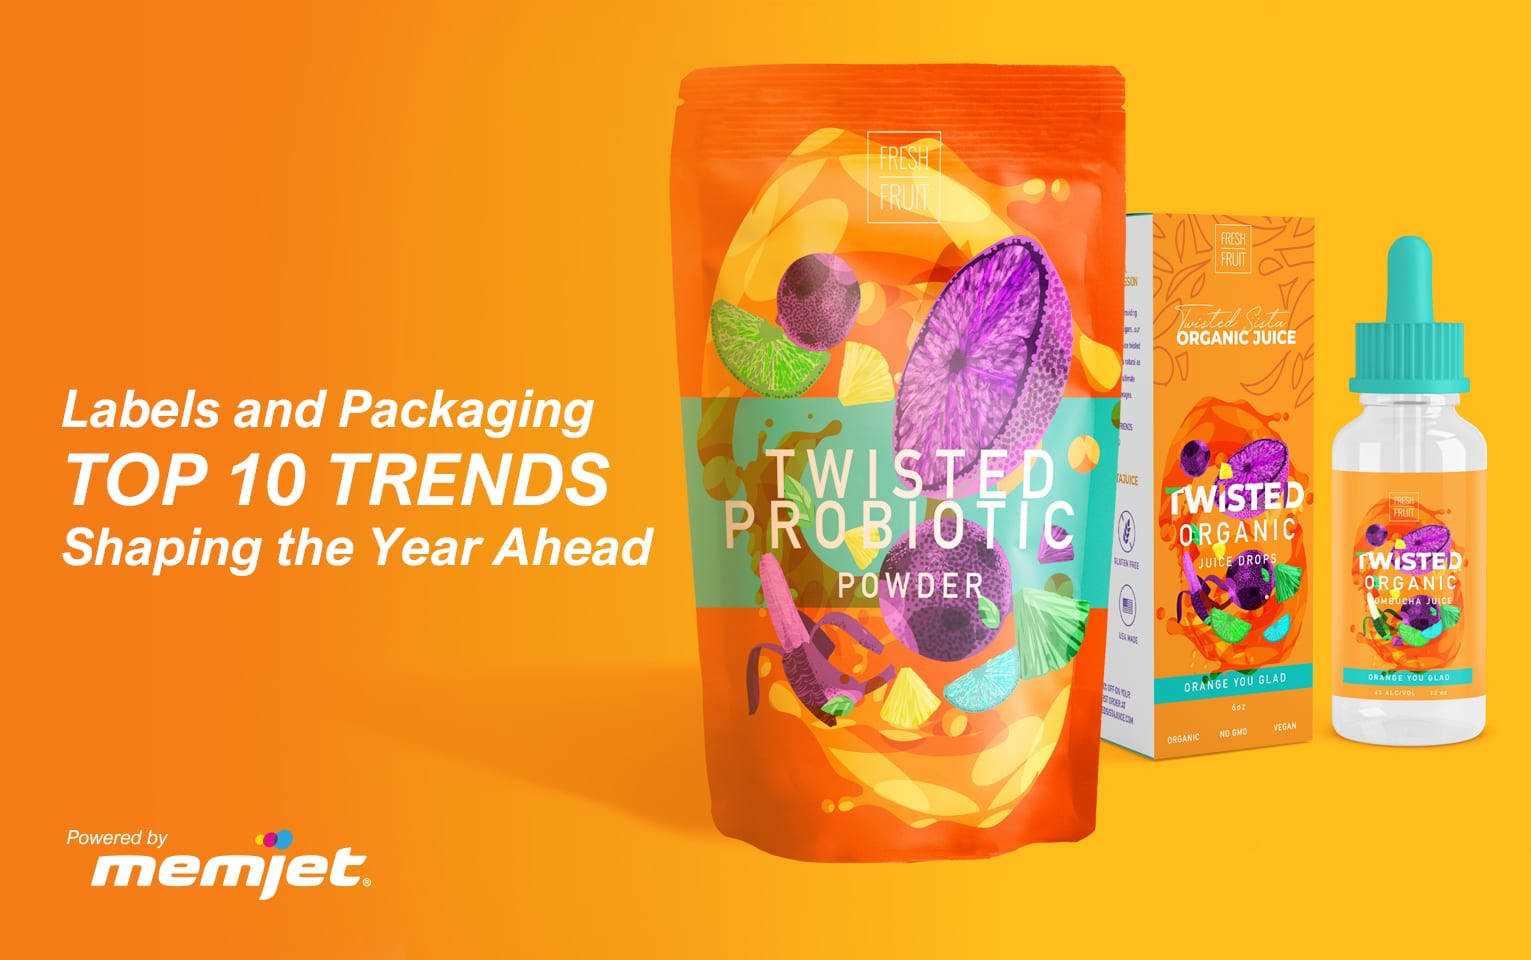 Artikel: Etiketten und Verpackungen: Die 10 wichtigsten Trends im noch vor uns liegenden Jahr